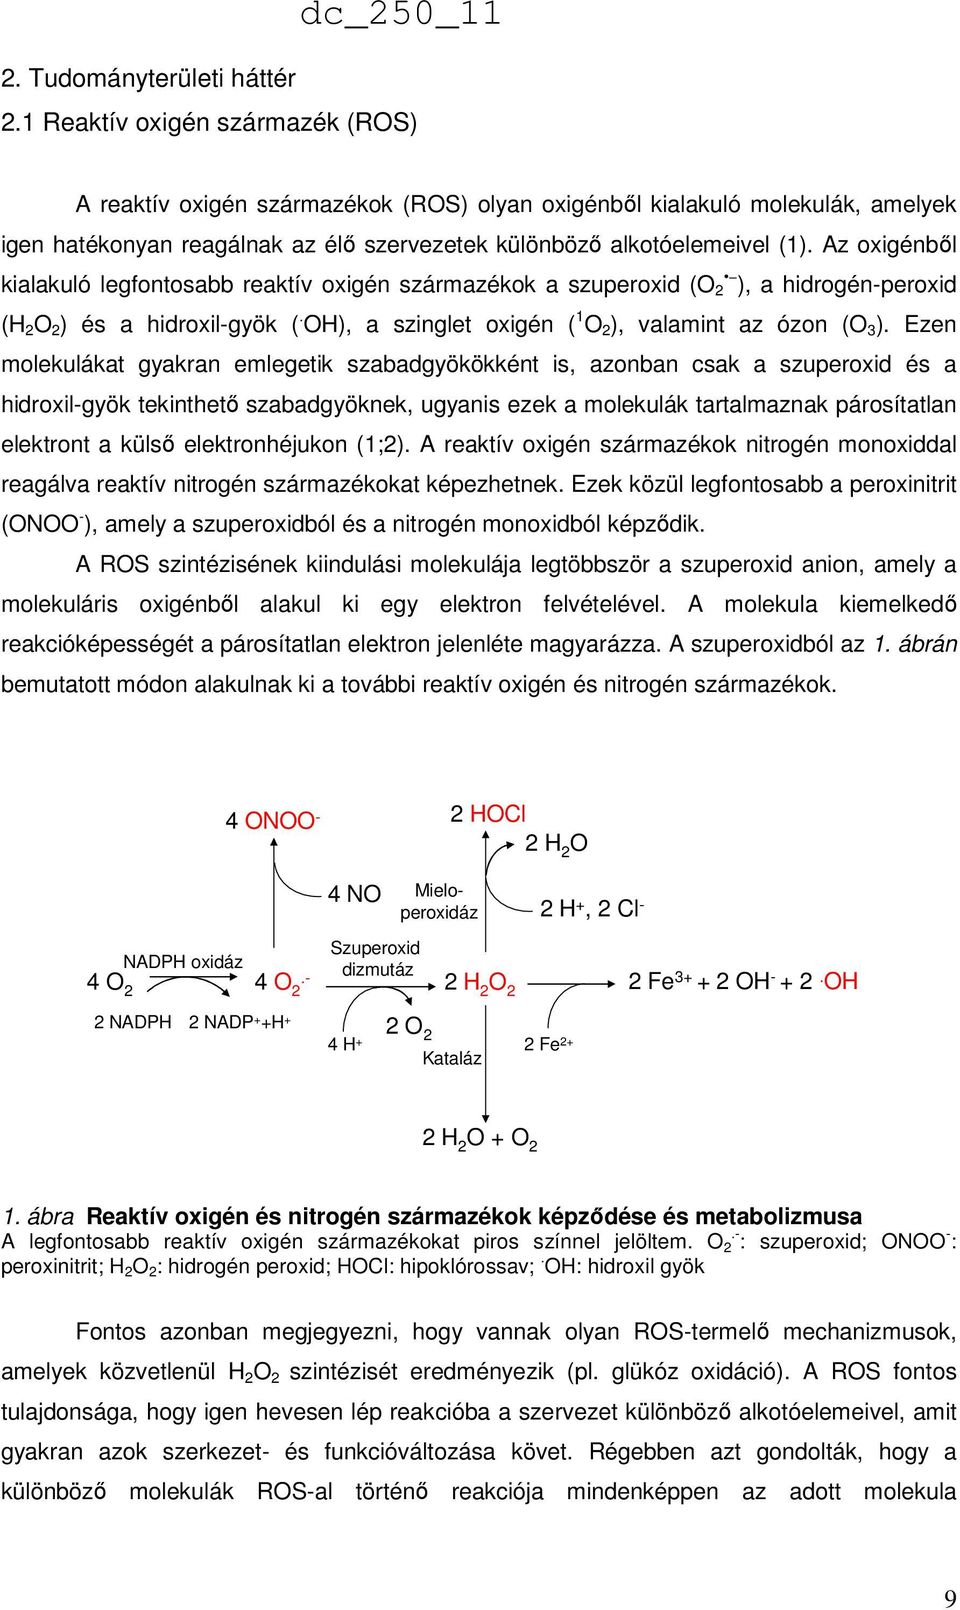 Az oxigénből kialakuló legfontosabb reaktív oxigén származékok a szuperoxid (O 2 ), a hidrogén-peroxid (H 2 O 2 ) és a hidroxil-gyök (. OH), a szinglet oxigén ( 1 O 2 ), valamint az ózon (O 3 ).